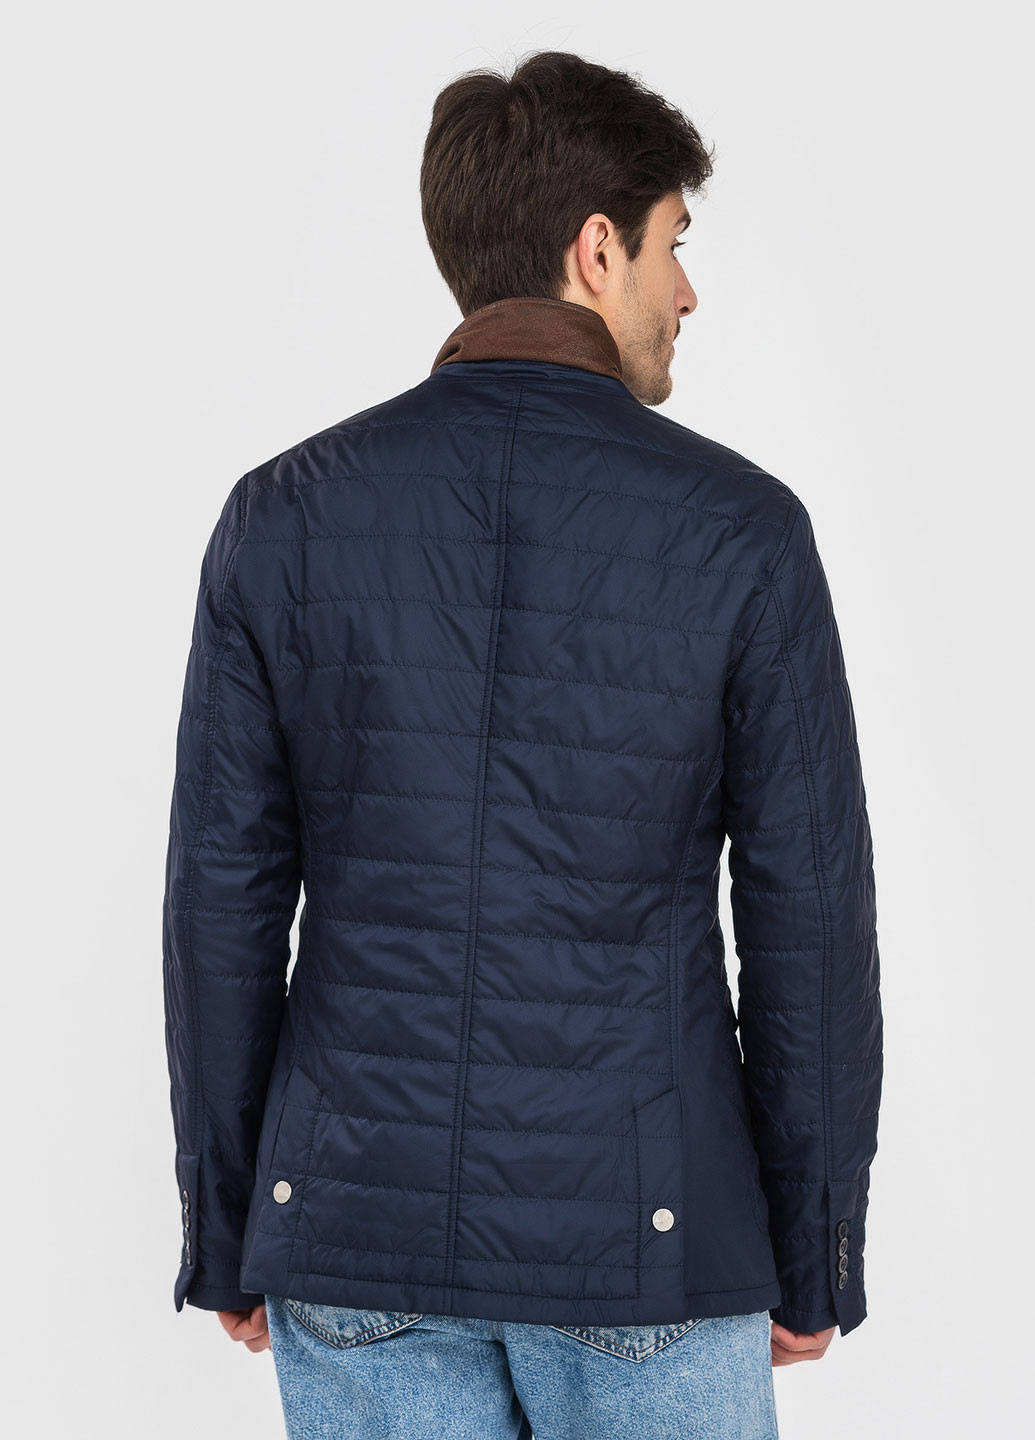 Синяя демисезонная куртка - пиджак Astoni ZOTEX